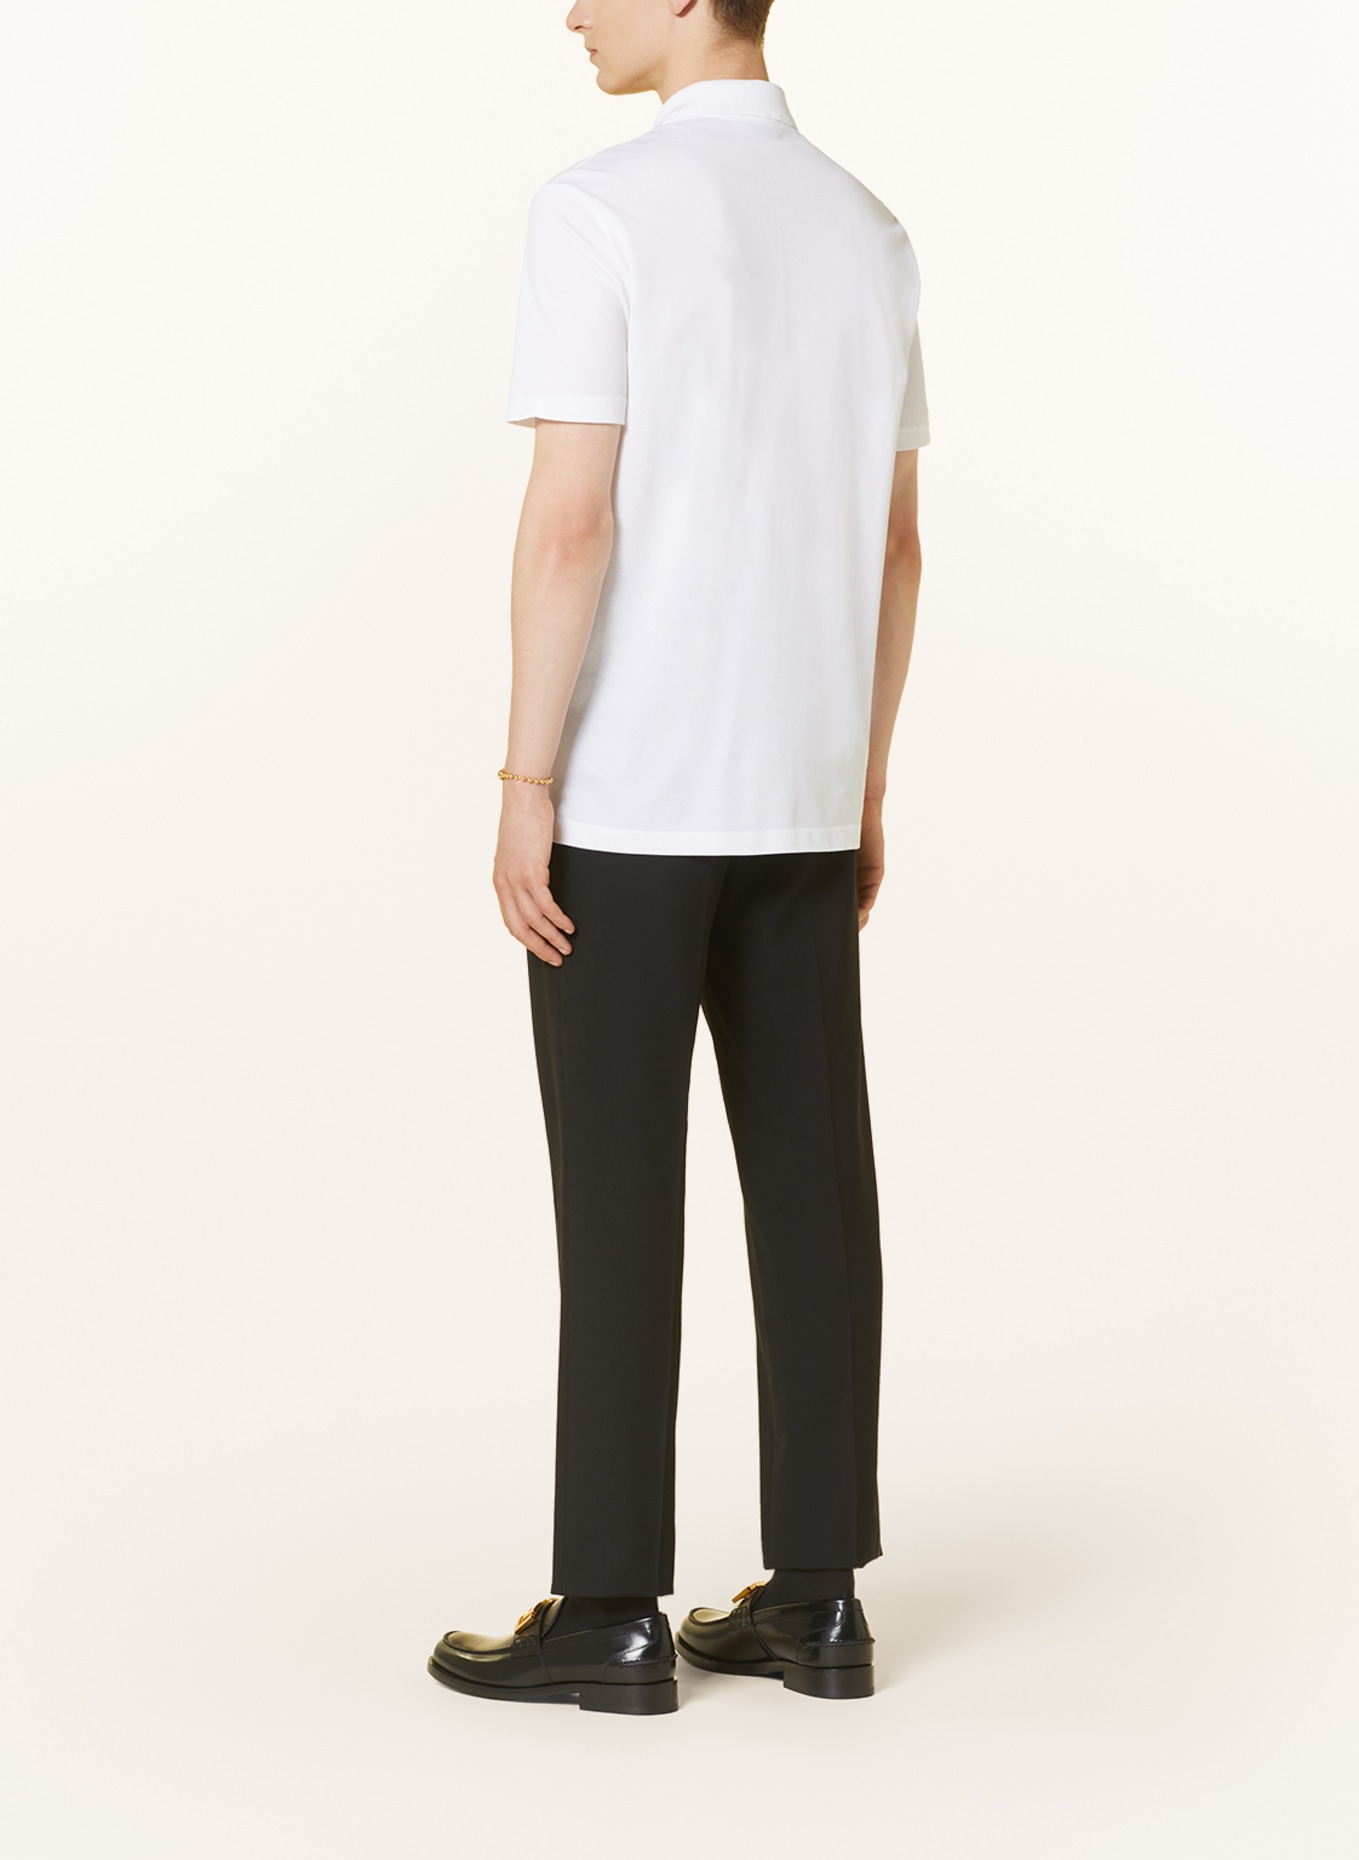 VERSACE Piqué polo shirt tailor fit, Color: WHITE (Image 3)